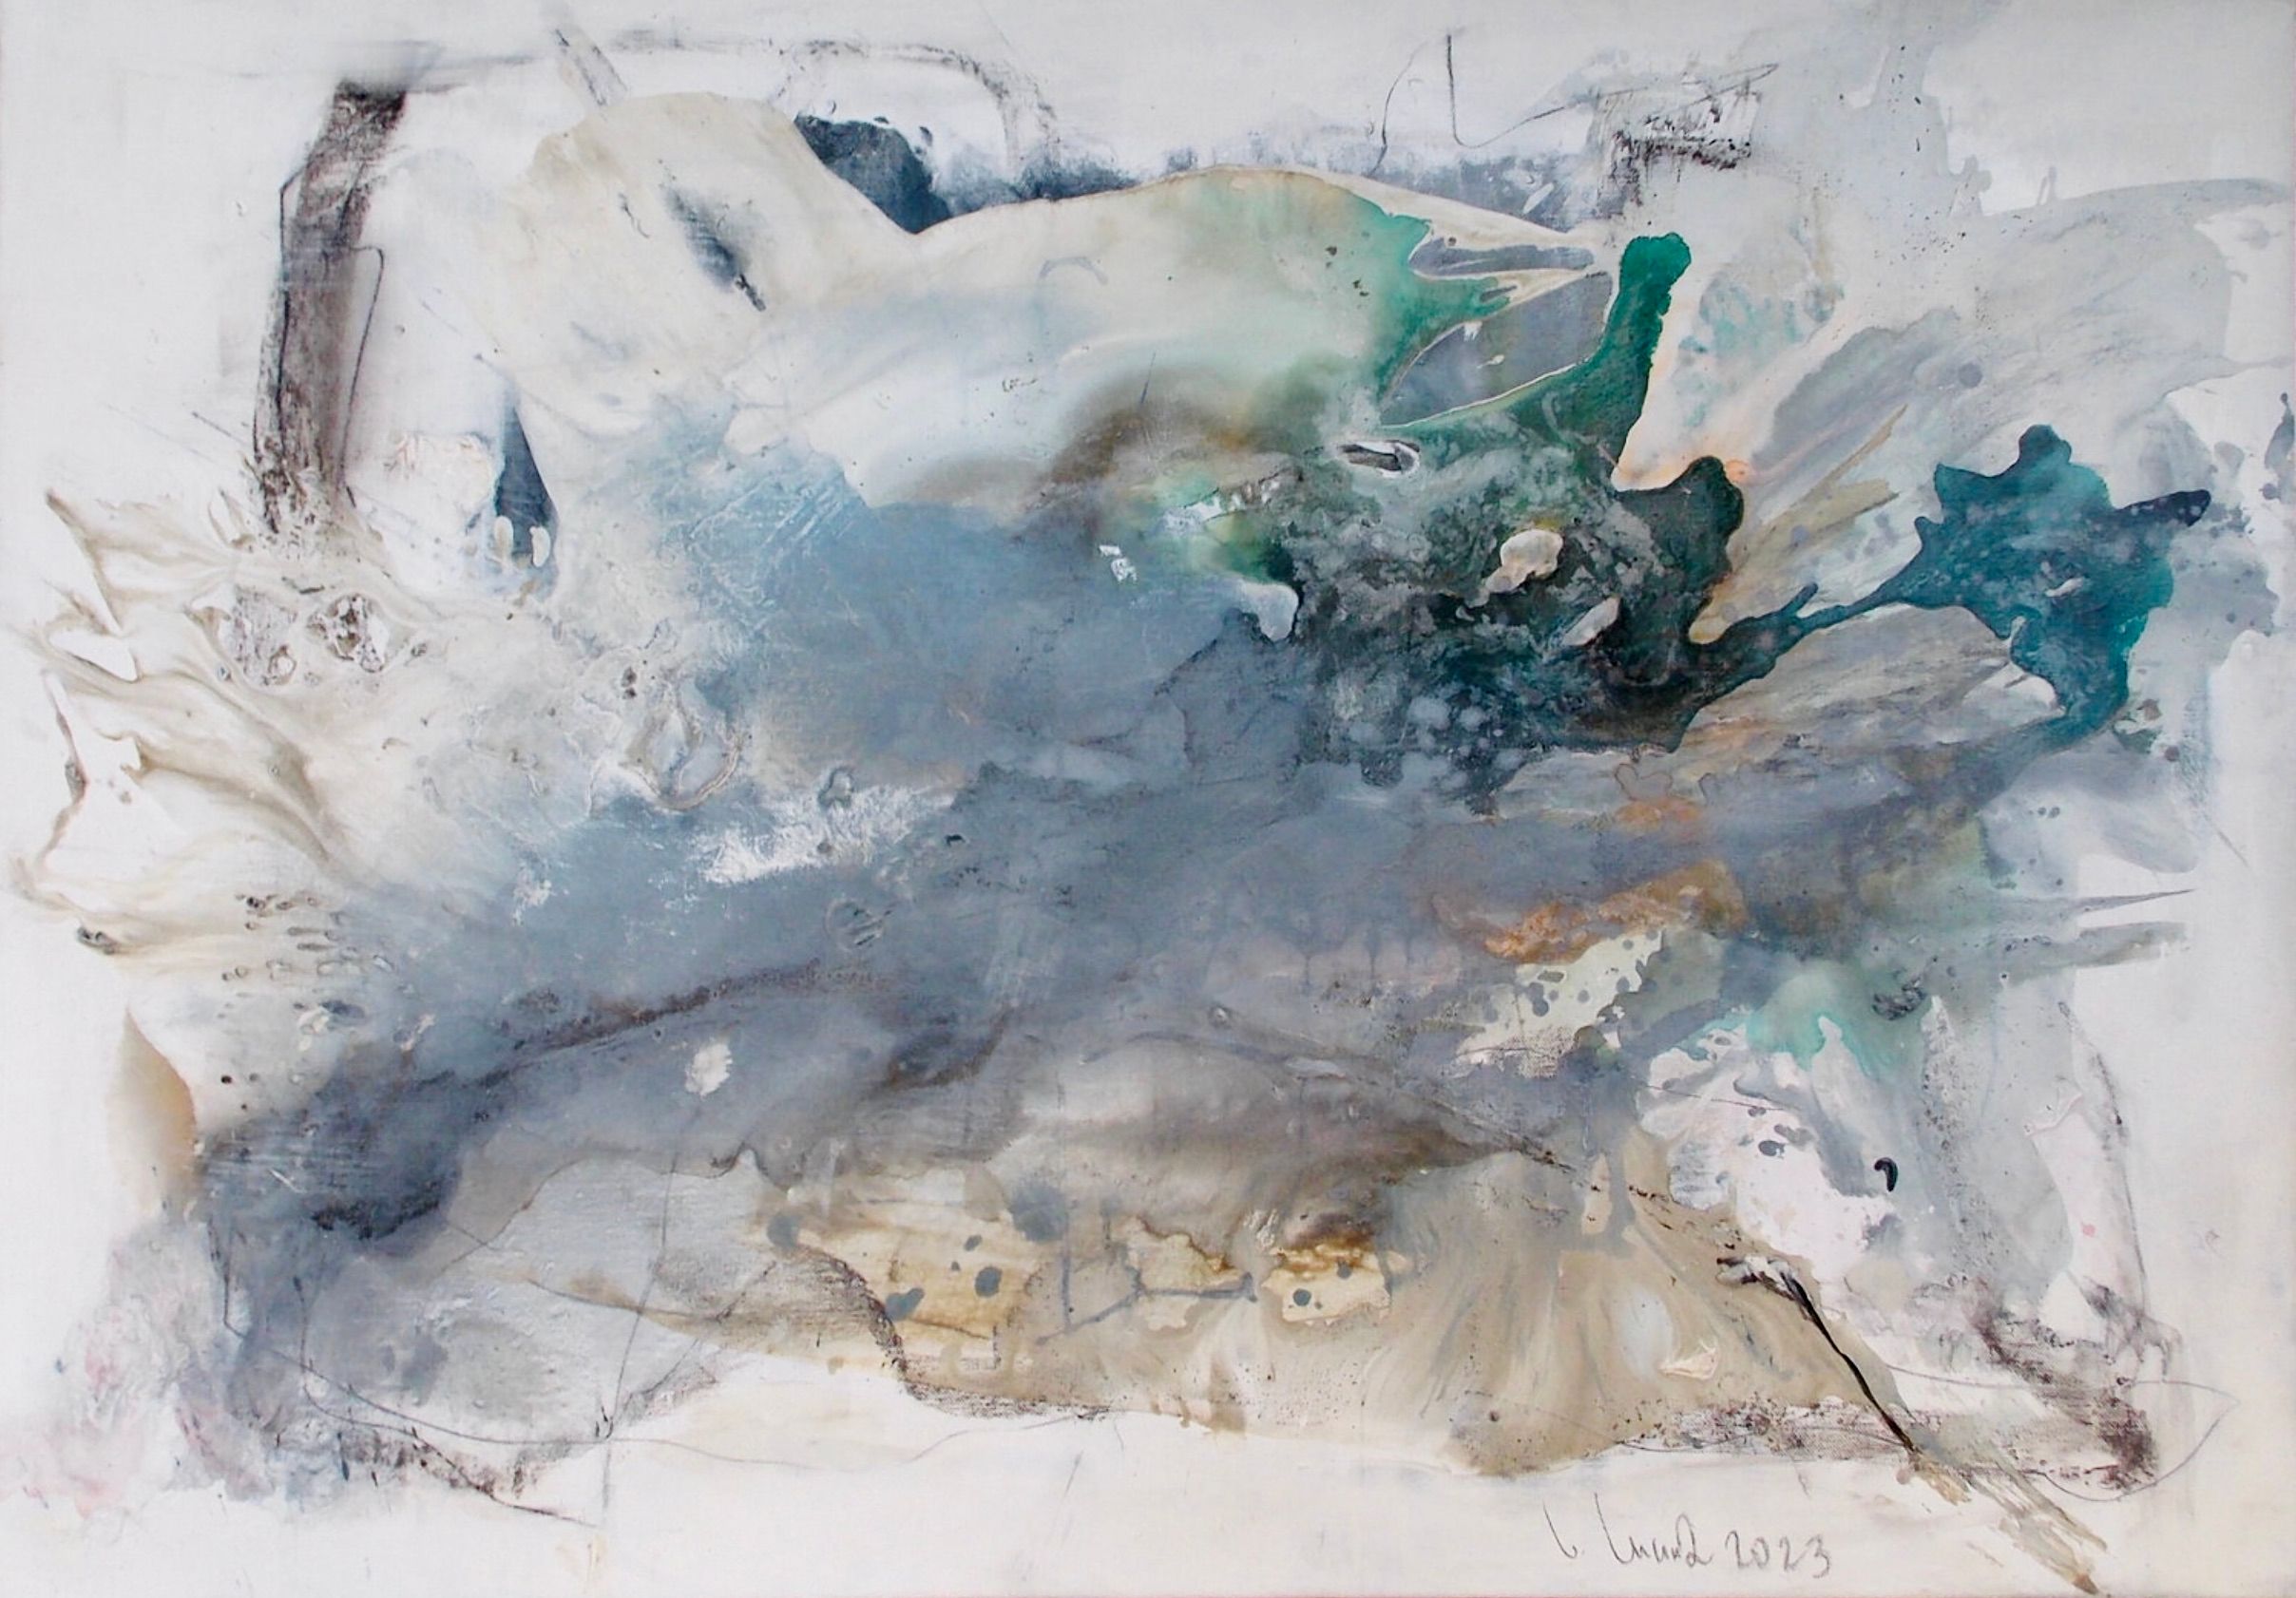 Nel dipinto astratto espressionista "Seductive Nature 1" di Christa Haack dominano i colori beige, blu, verde e nero.